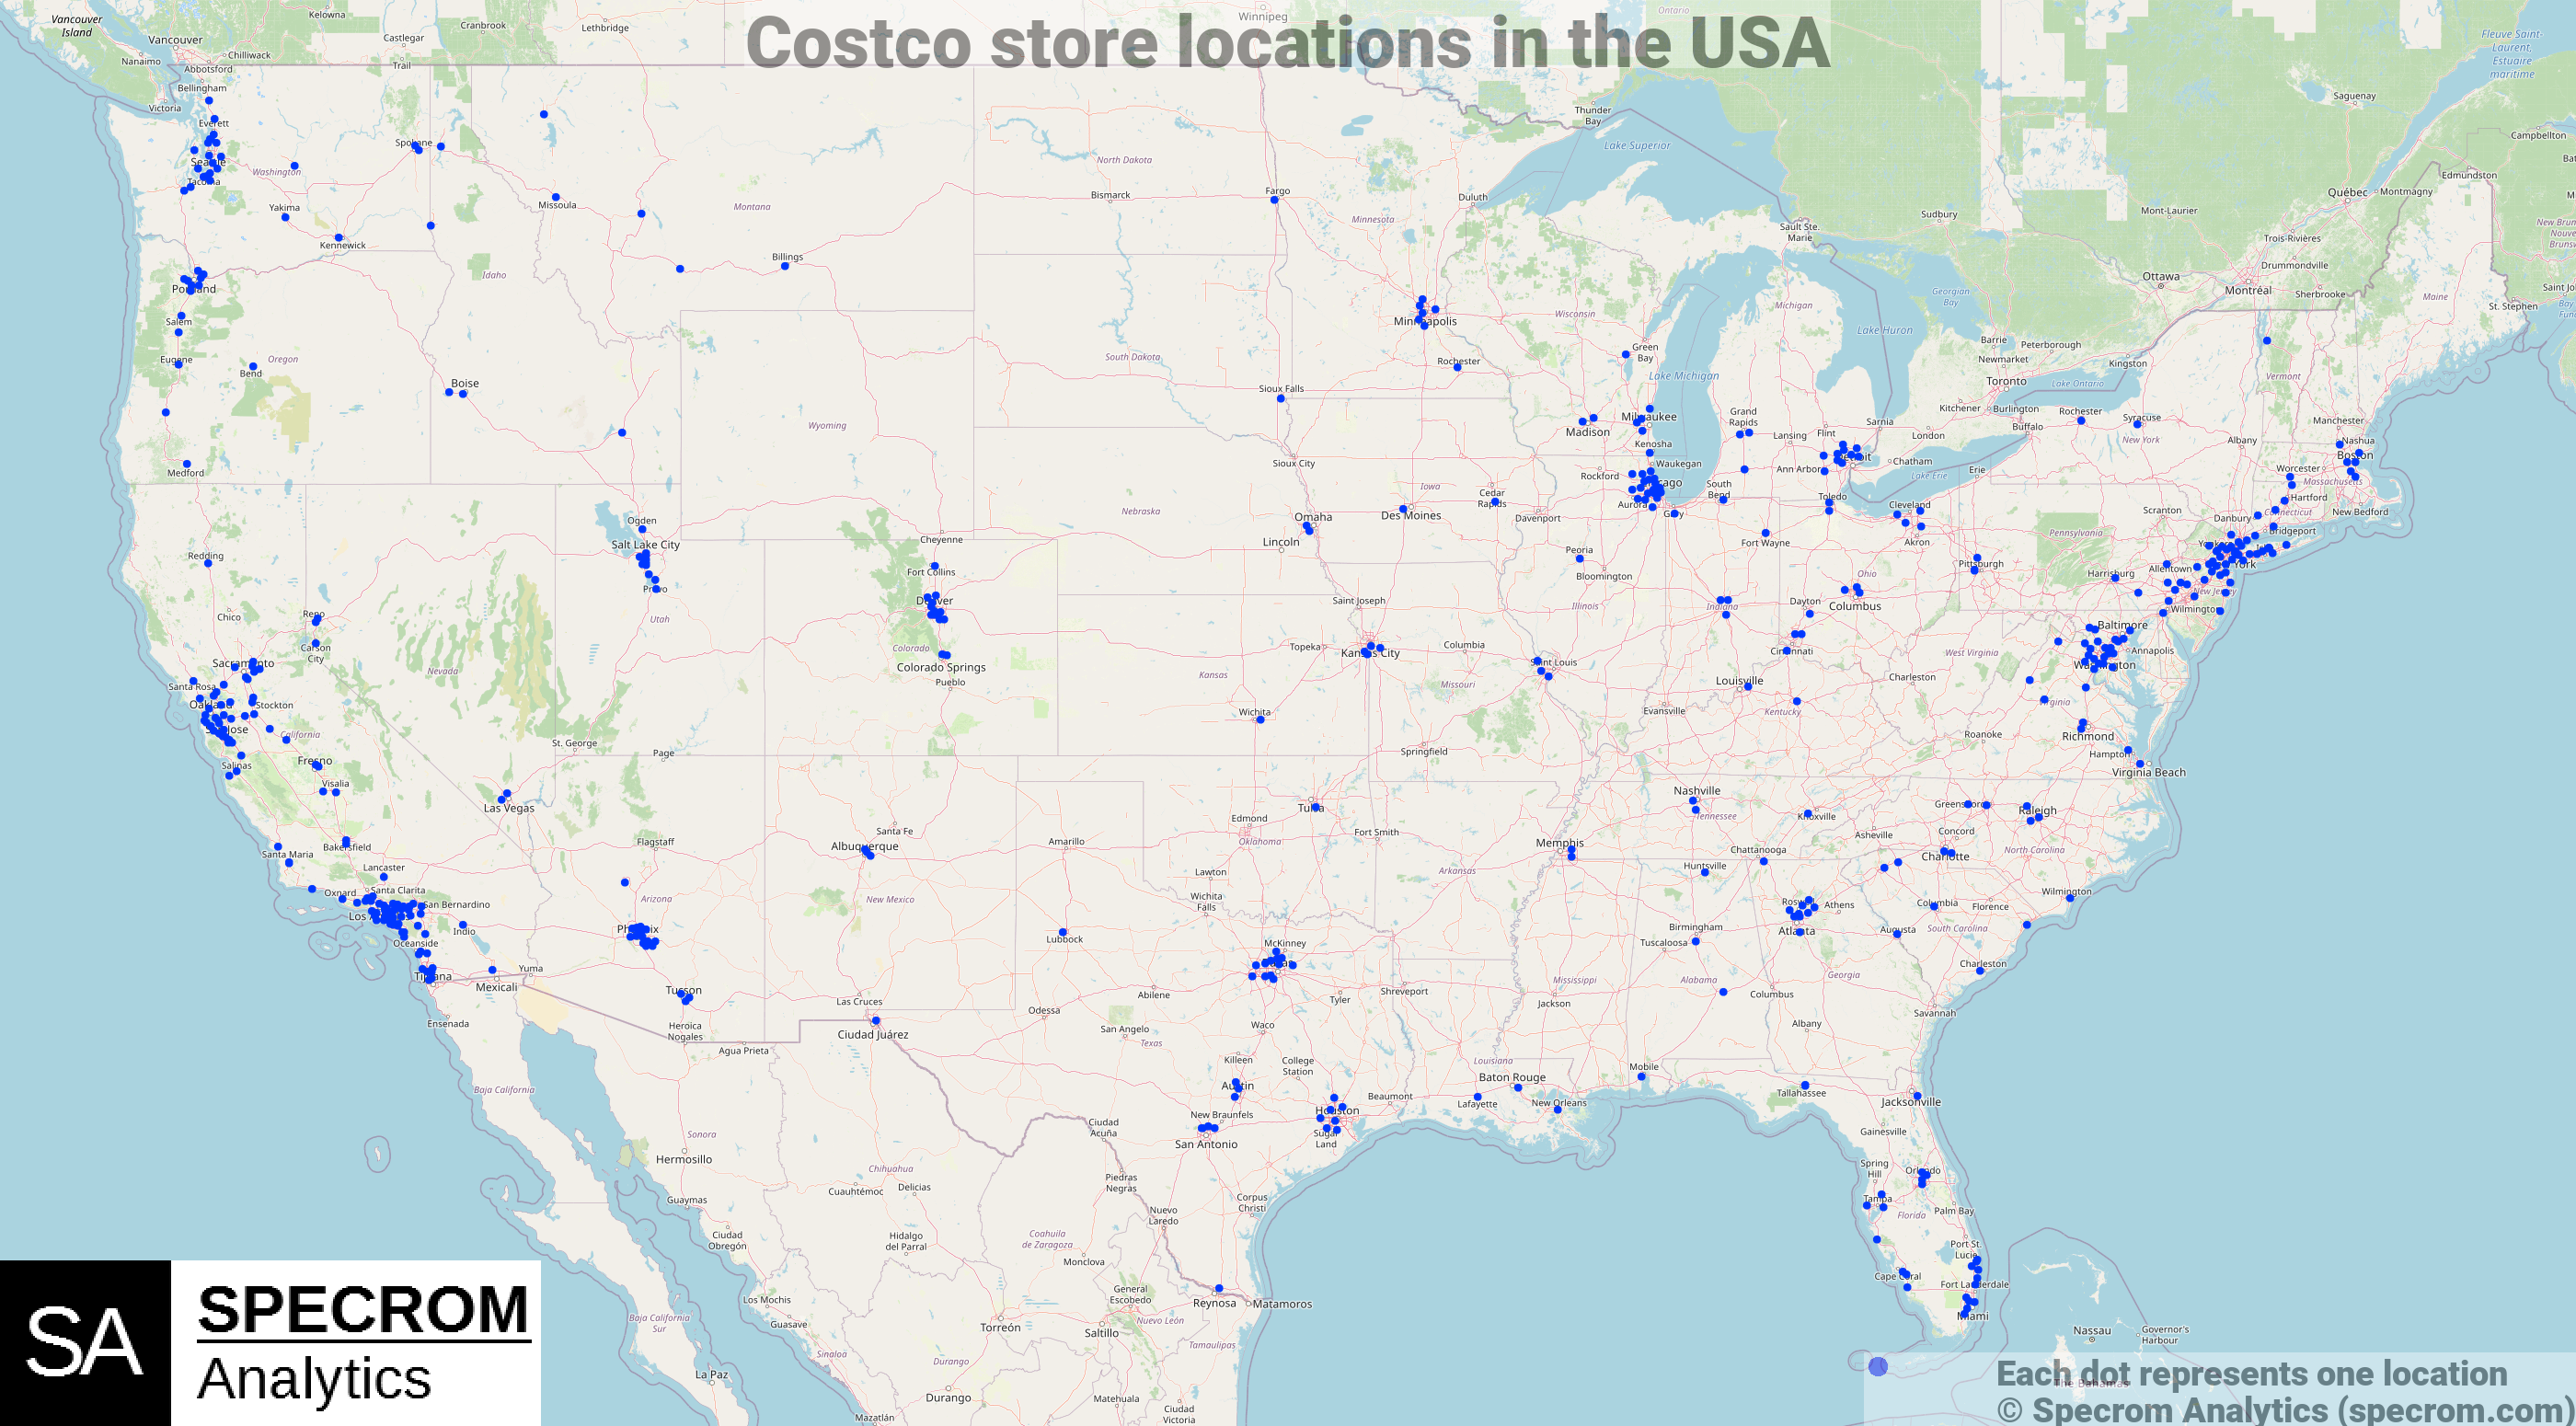 Costco store locations in the USA